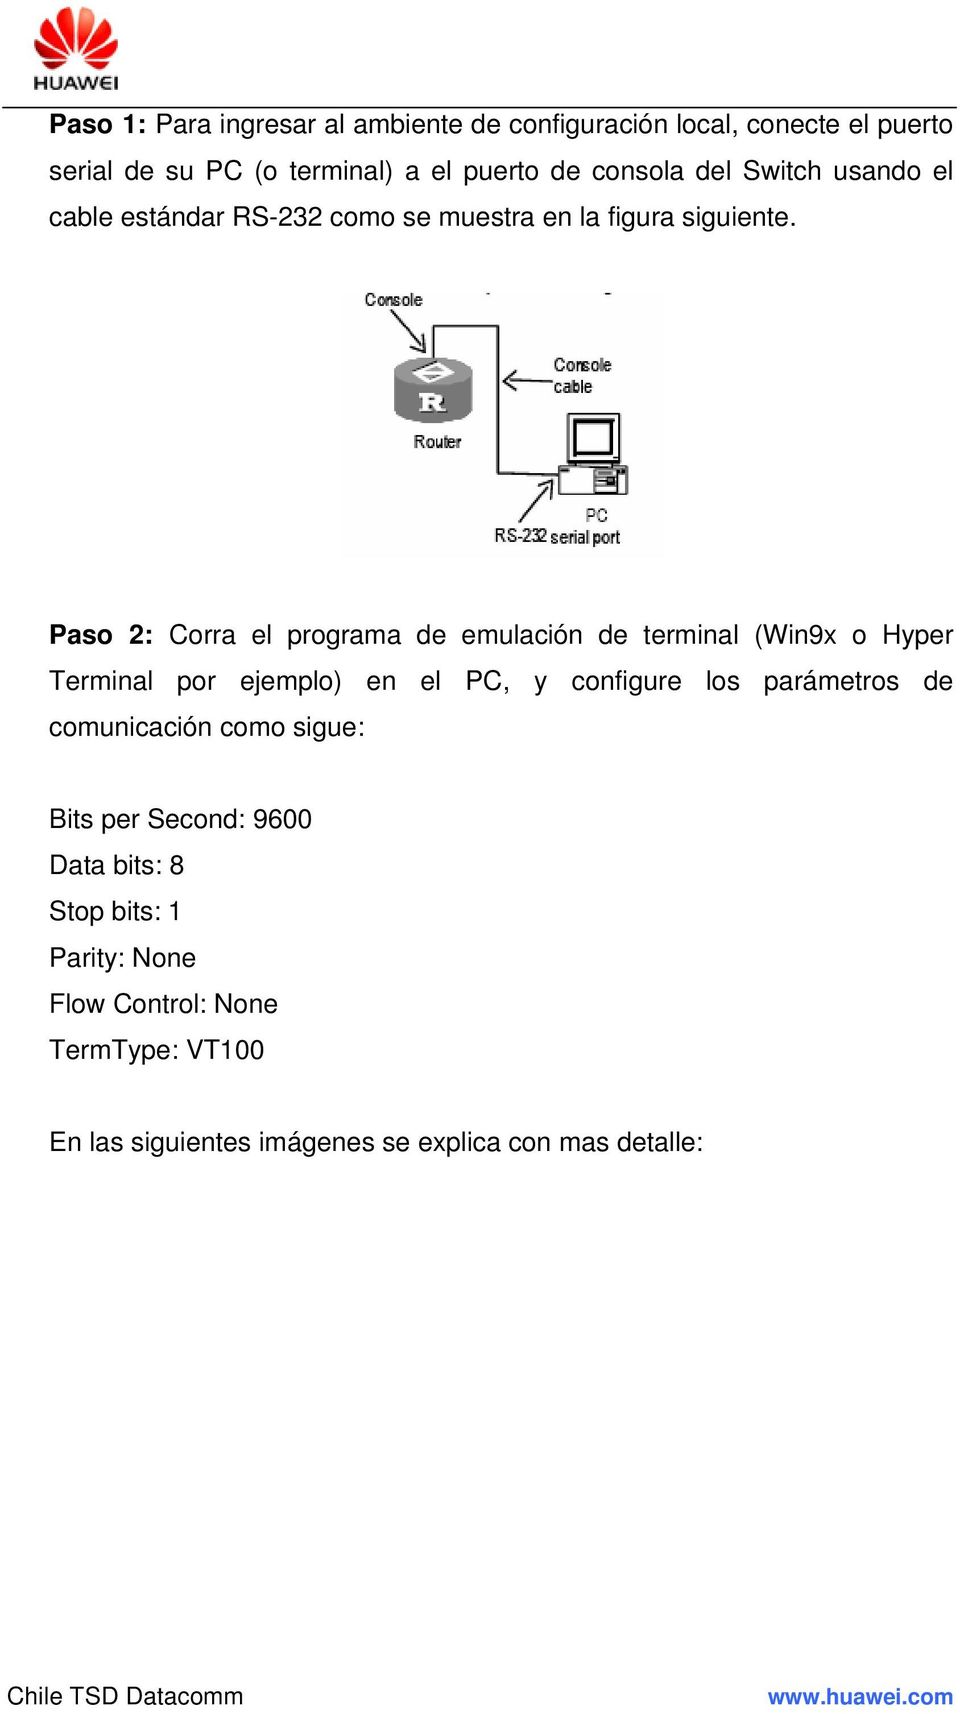 Paso 2: Corra el programa de emulación de terminal (Win9x o Hyper Terminal por ejemplo) en el PC, y configure los parámetros de